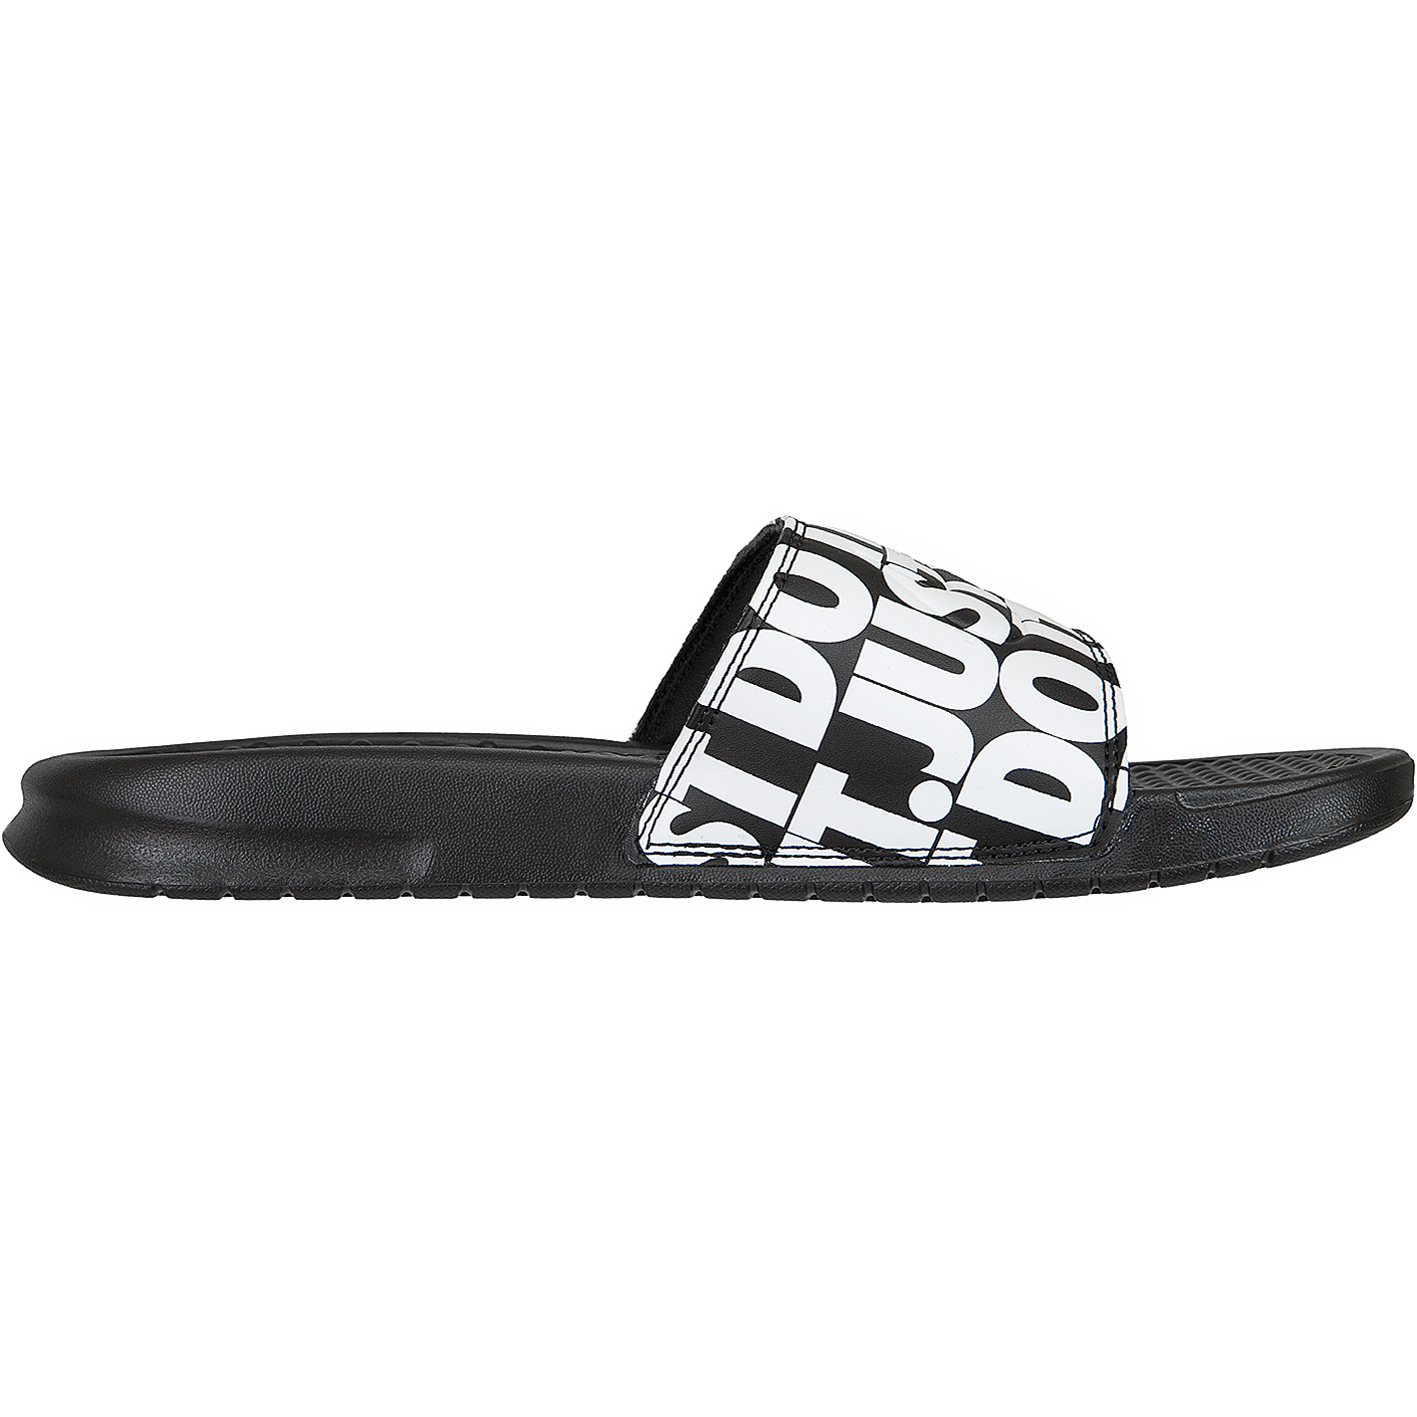 ☆ Nike Badelatschen Benassi JDI Print schwarz/weiß - hier bestellen!